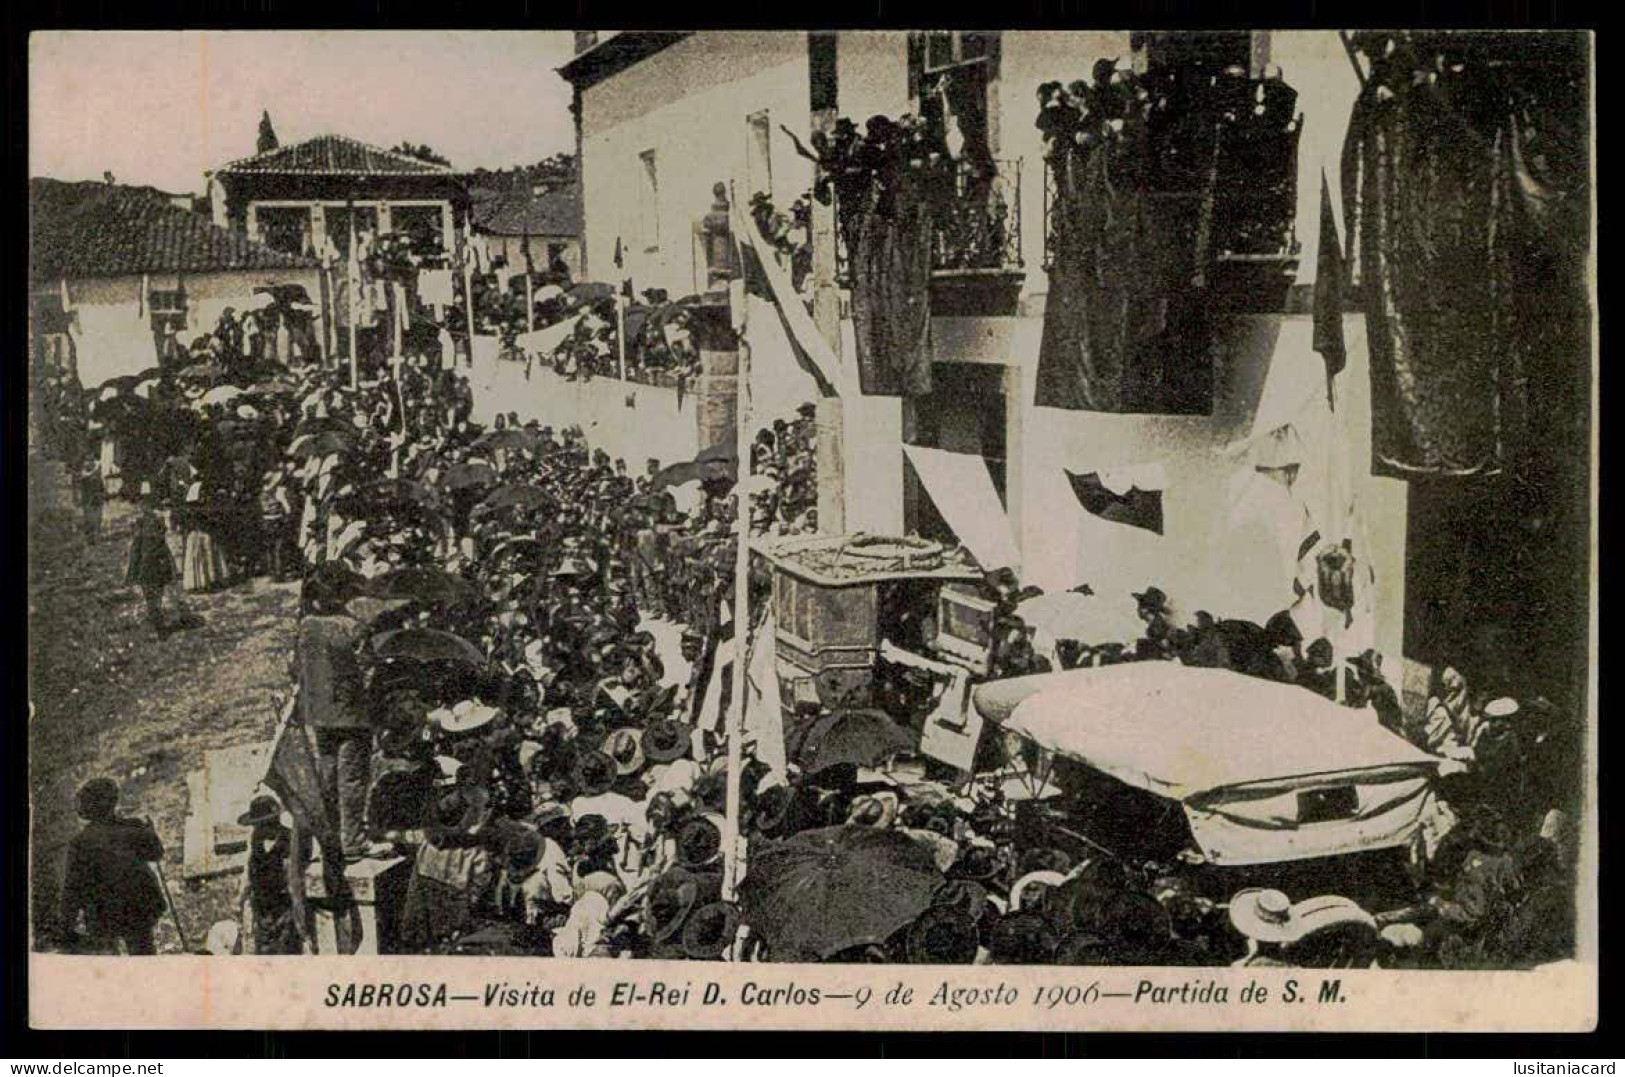 SABROSA - MONARQUIA - Visita De El-Rei D. Carlos - 9 De Agosto 1906 - Partida De S.M.     Carte Postale - Vila Real